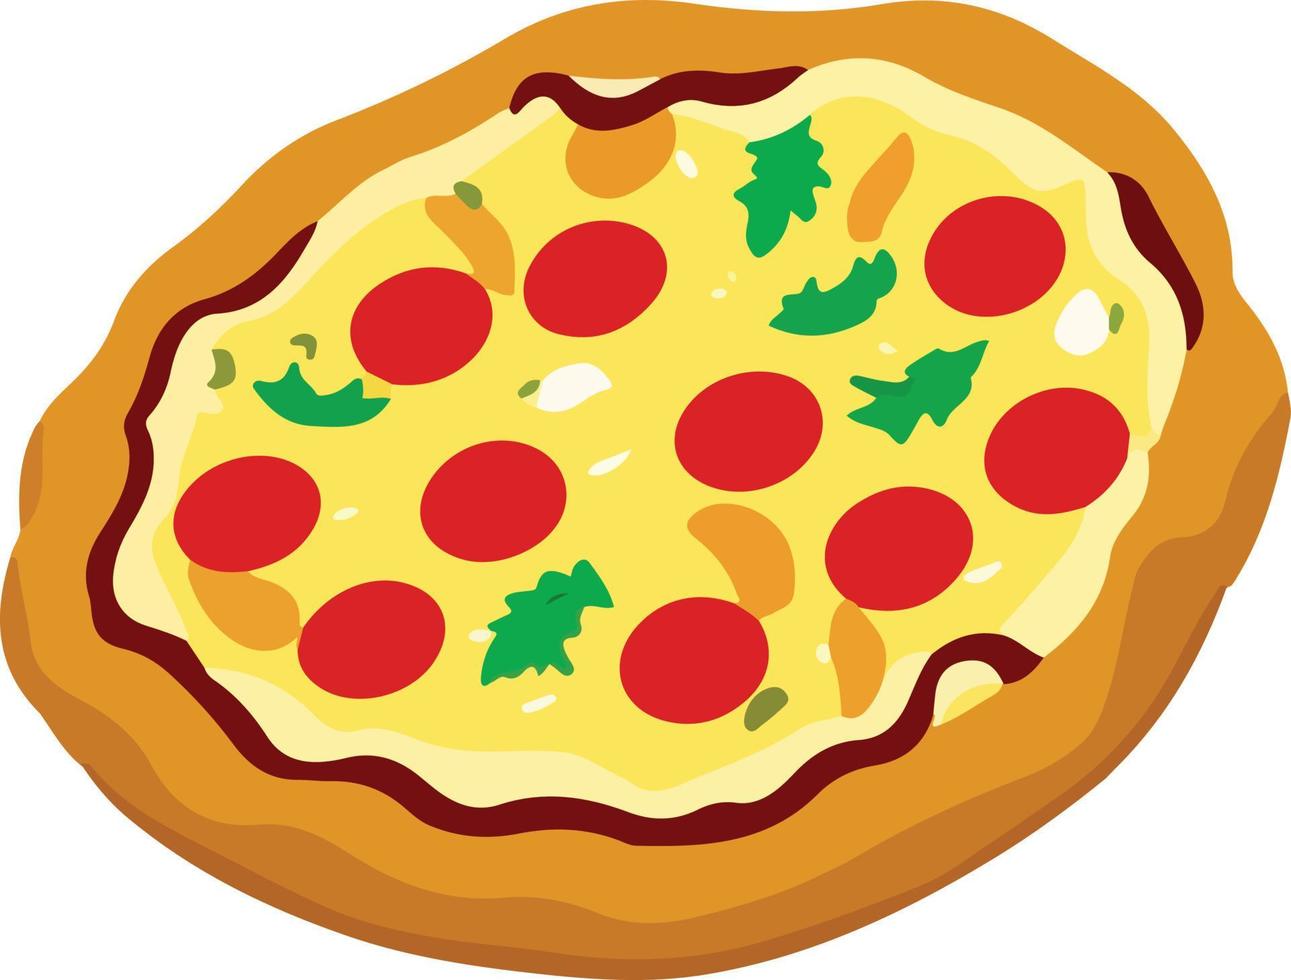 köstlich Pizza mit Tomate und Mozzarella vektor